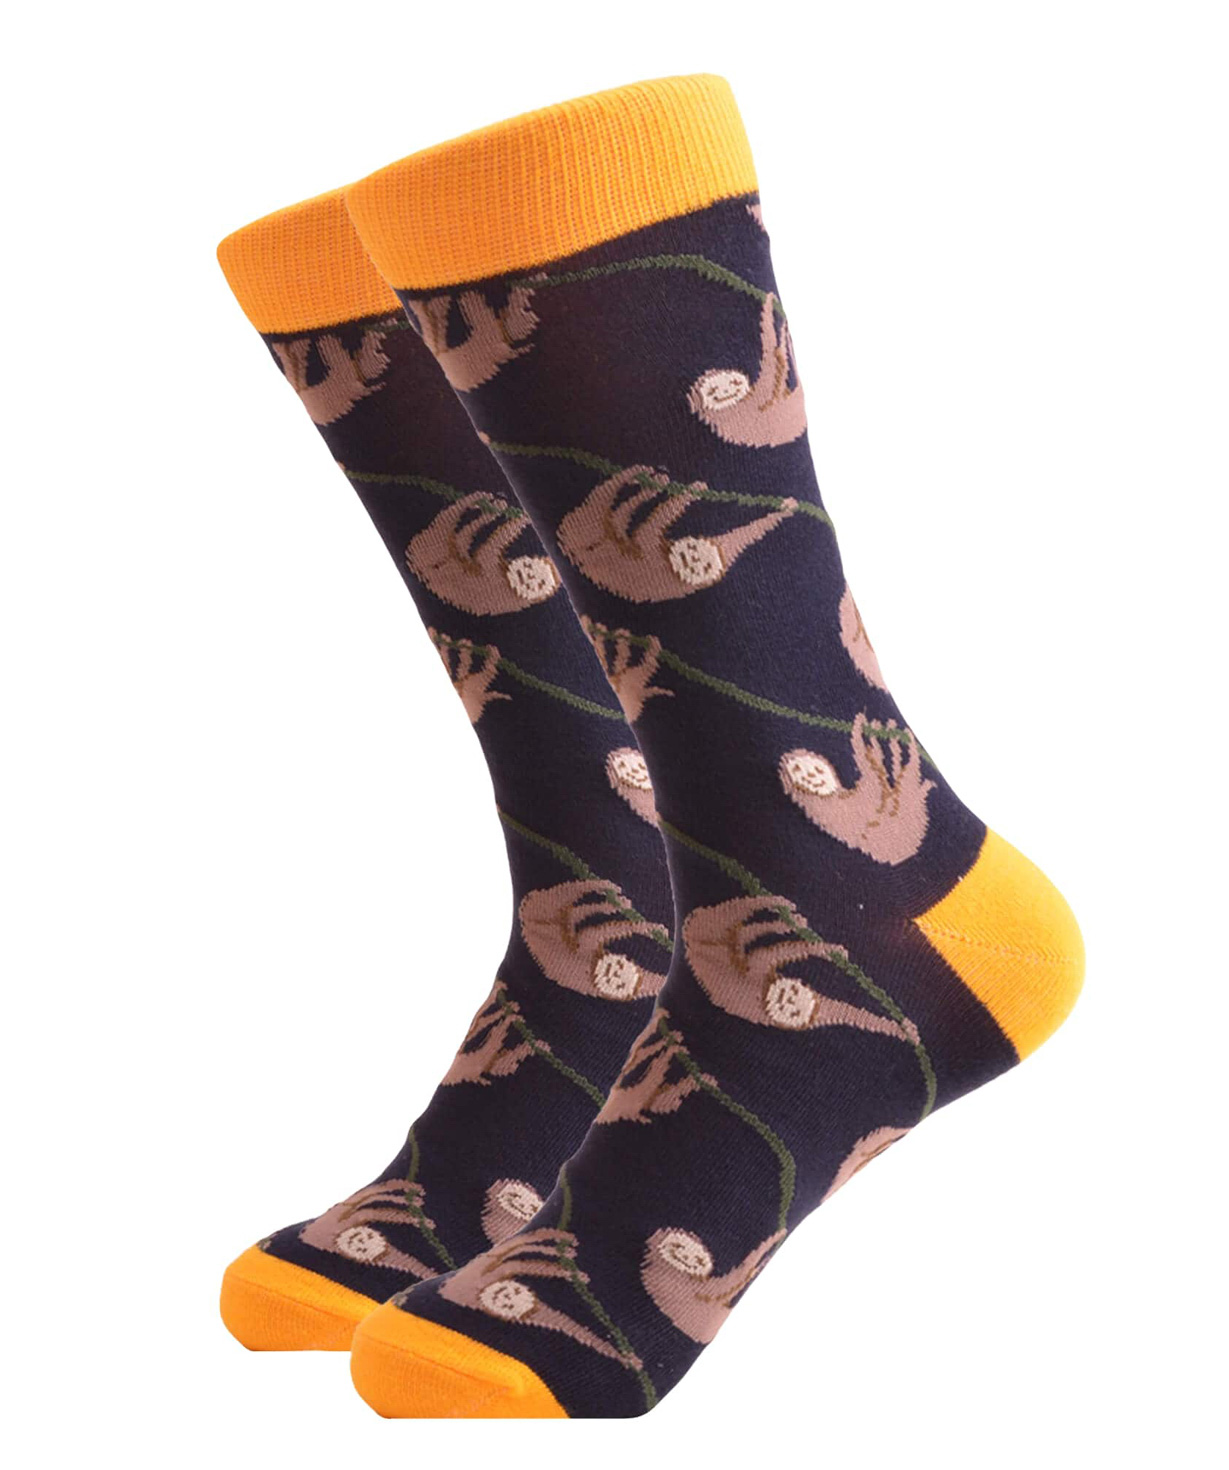 Socks `Zeal Socks` sloth №2